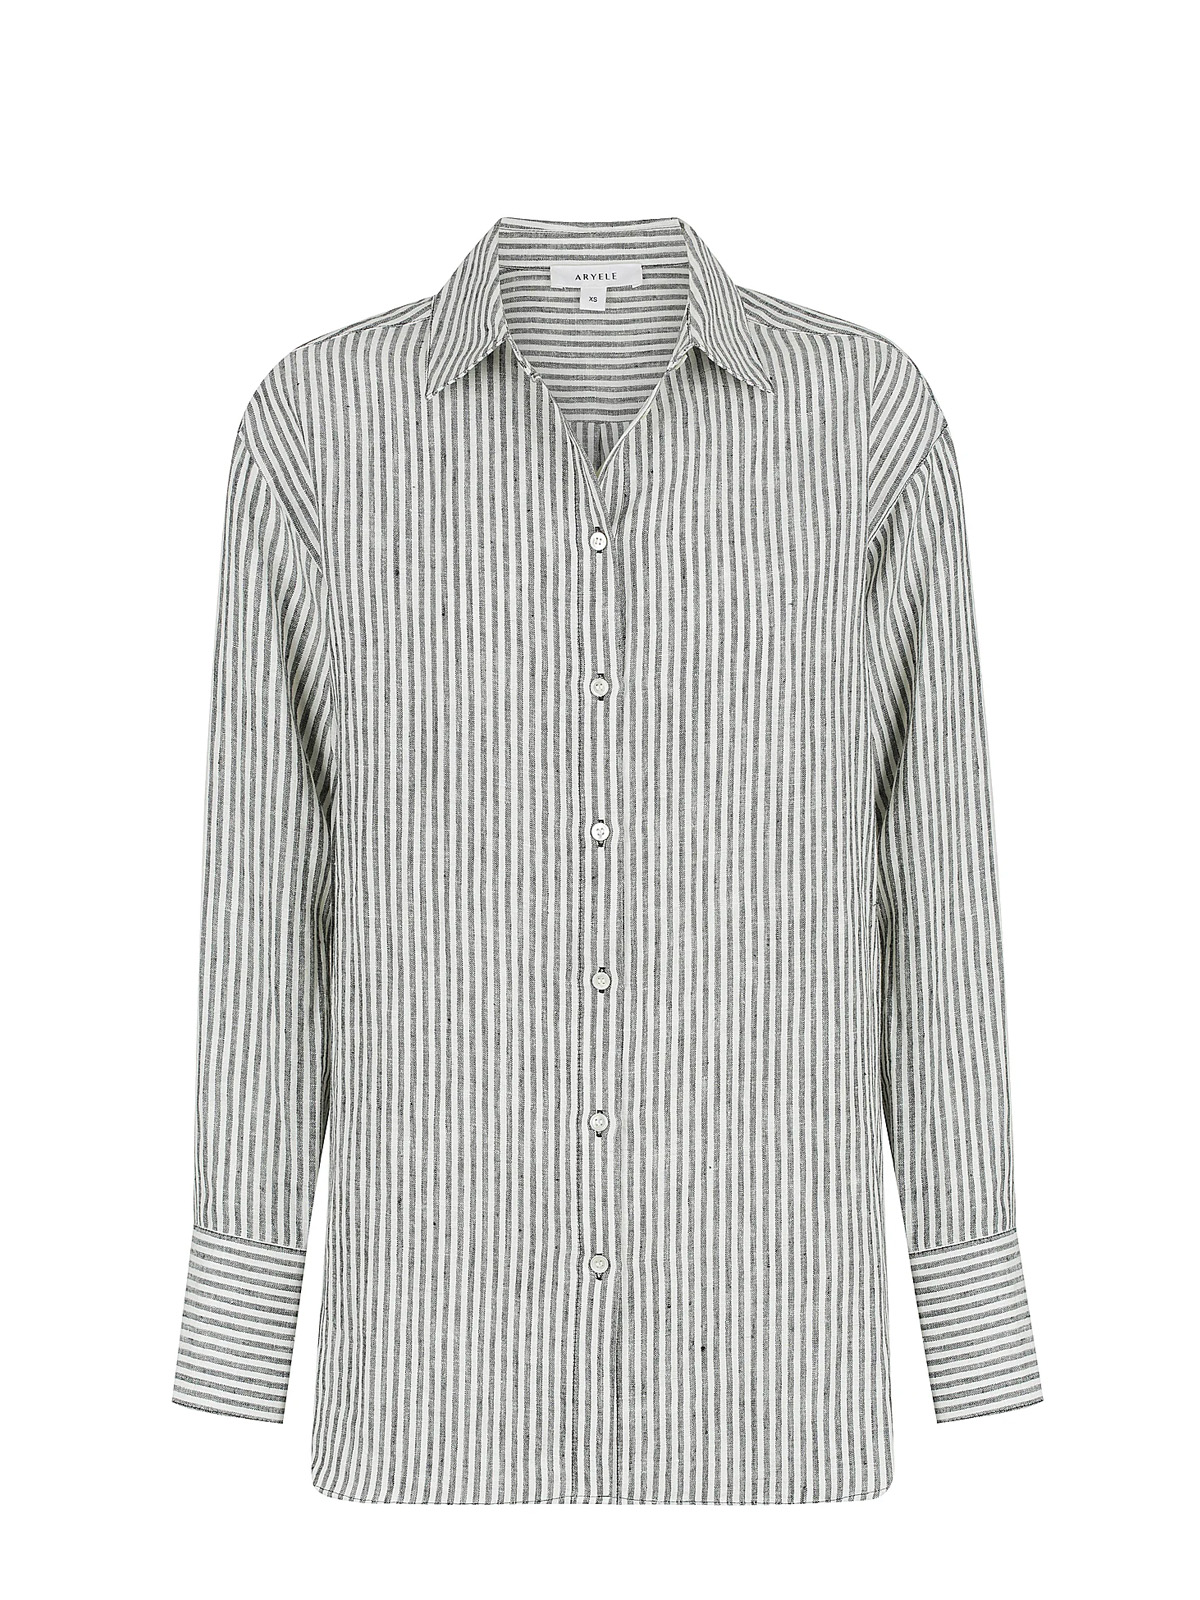 Alexa Stripe Shirt / Black/Ivory - Seventh Pocket